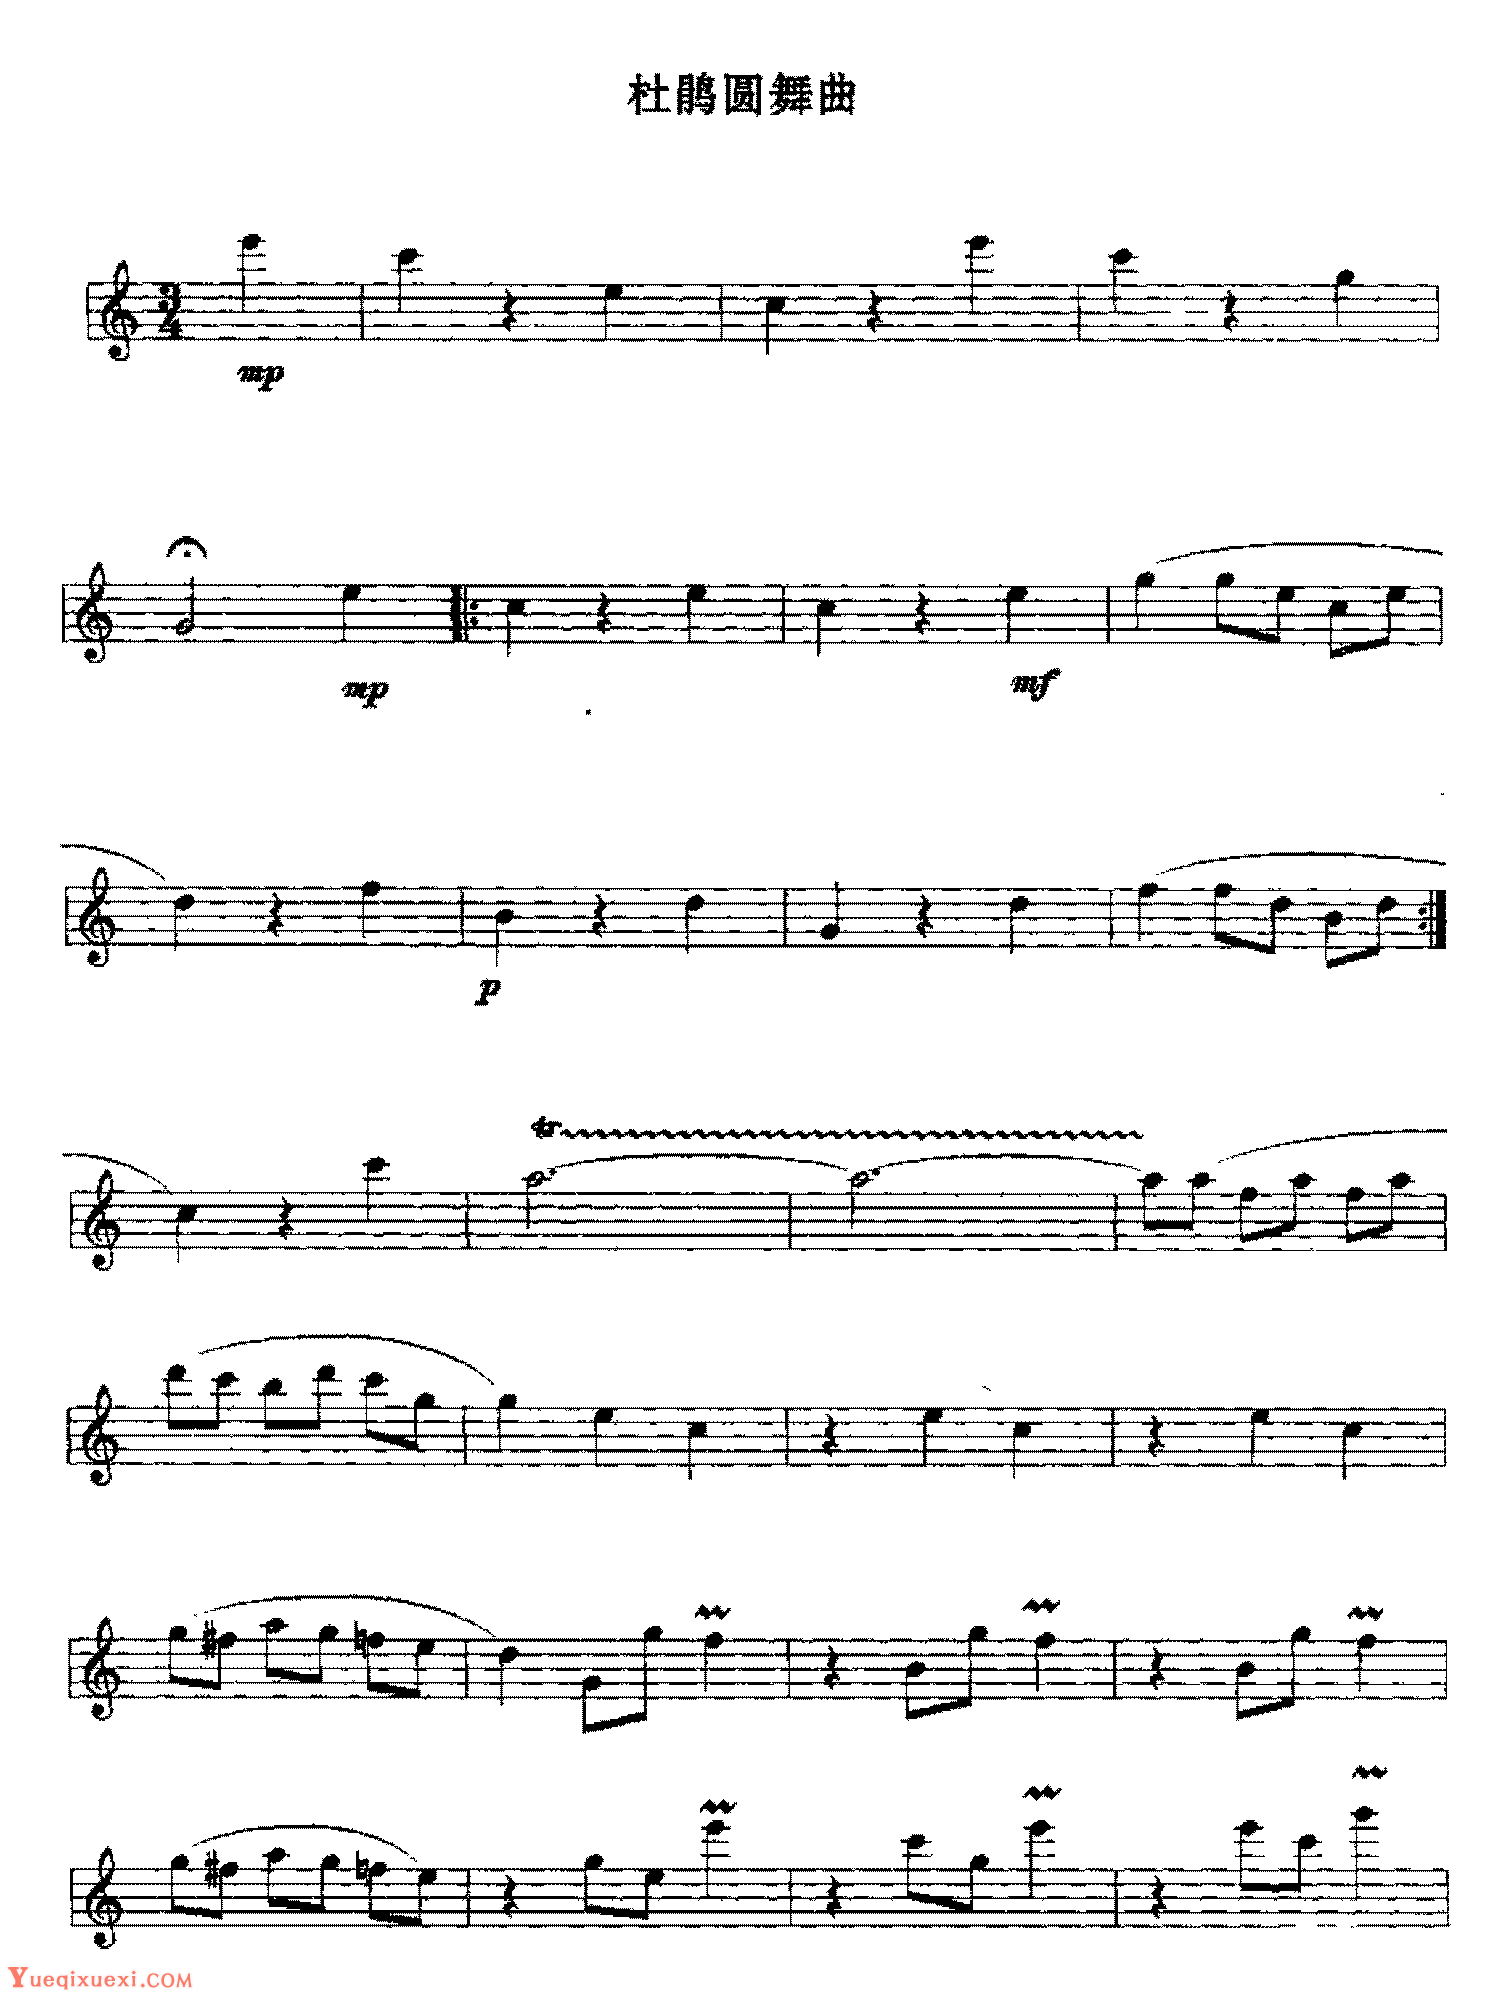 圆舞曲-肖斯塔科维奇五线谱预览1-钢琴谱文件（五线谱、双手简谱、数字谱、Midi、PDF）免费下载